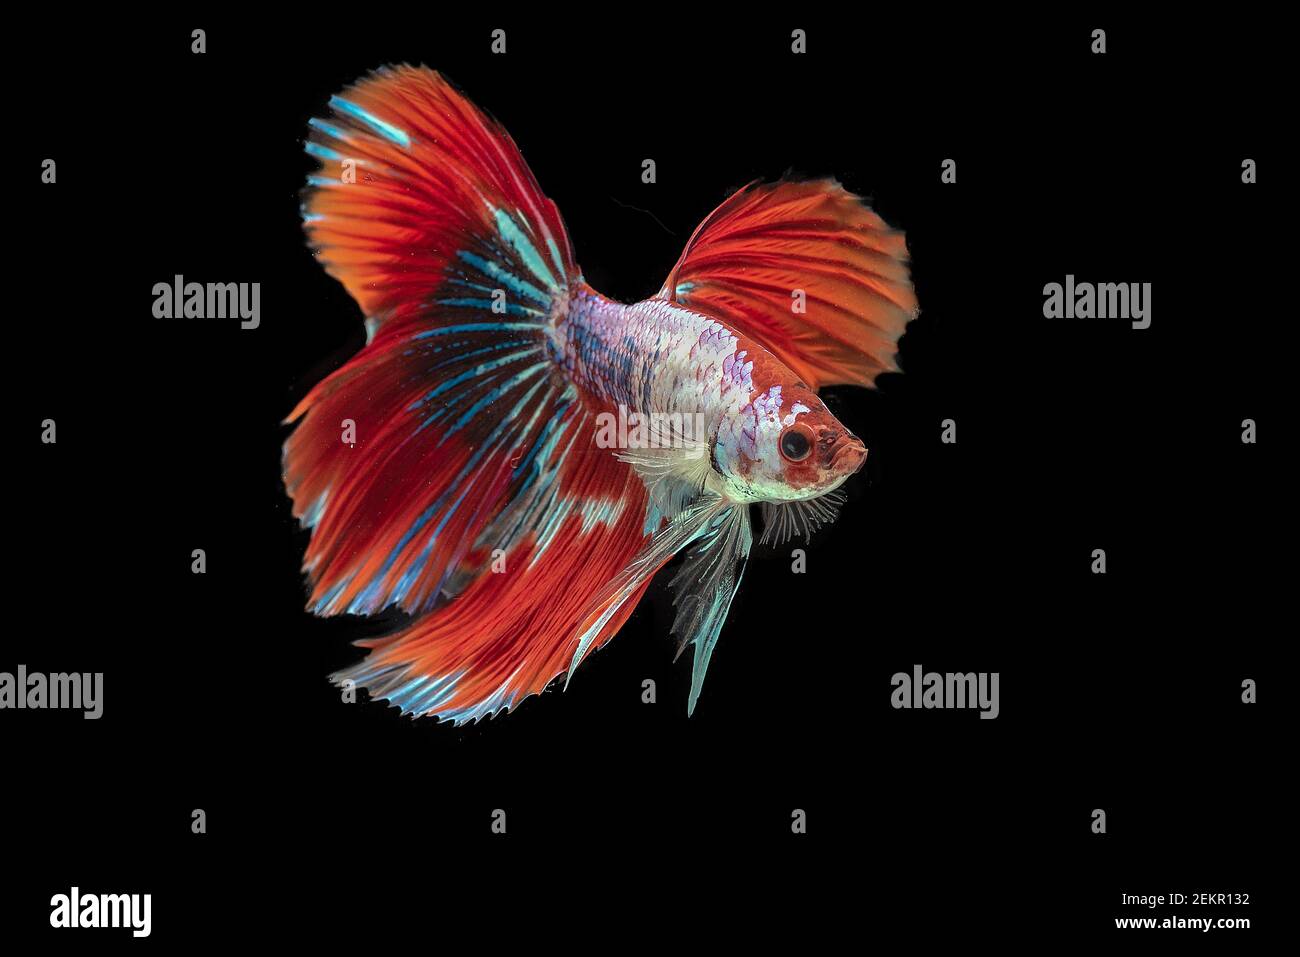 Siam Betta Kampf Fisch in schwarzem Hintergrund Stockfoto